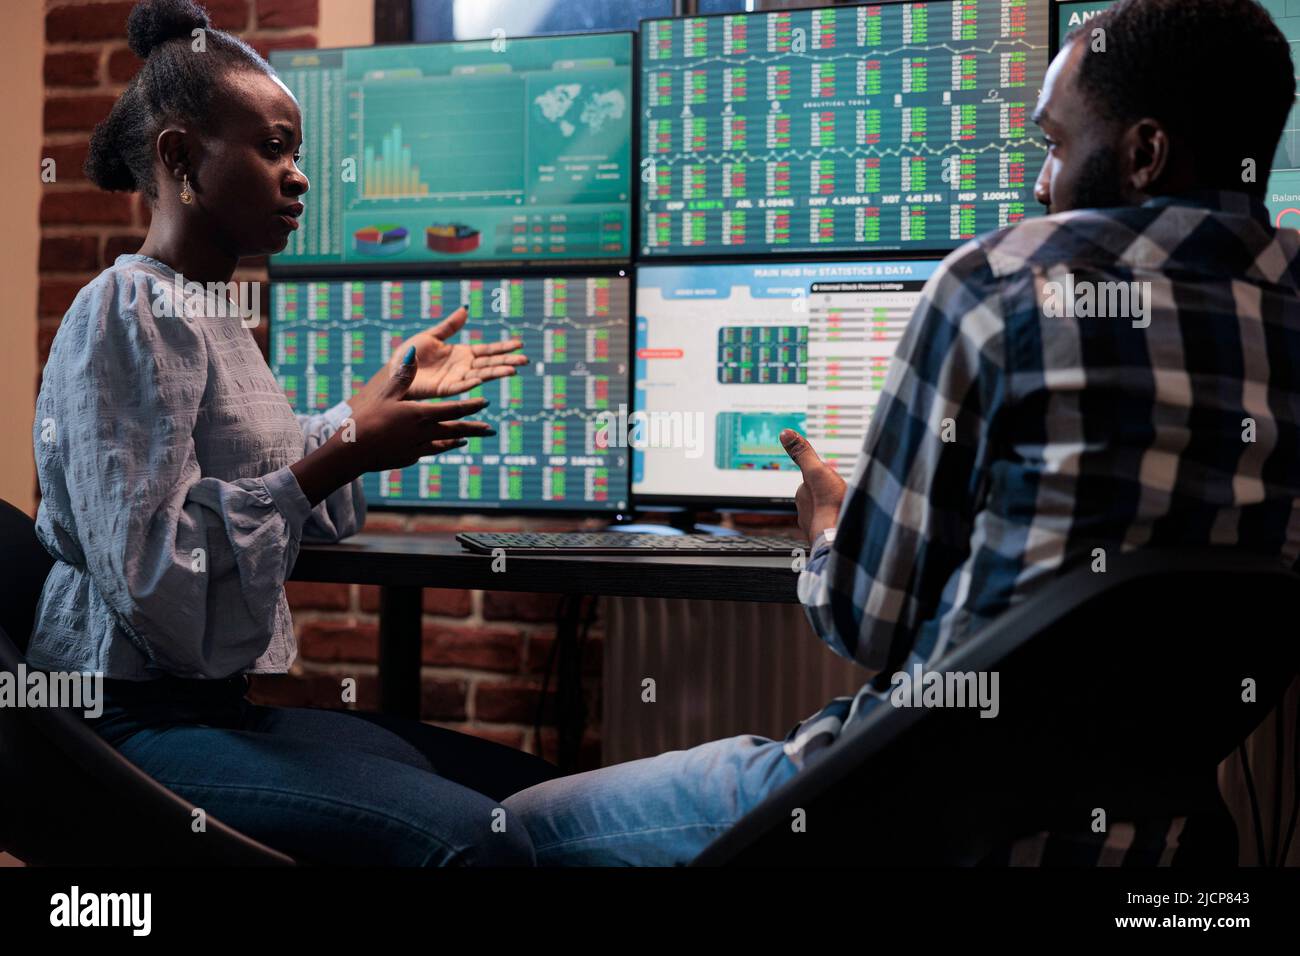 Los comerciantes profesionales de la compañía de inversión que se sientan  en la estación de trabajo multi monitor mientras analizan los datos  financieros en tiempo real. Los inversionistas de la bolsa de